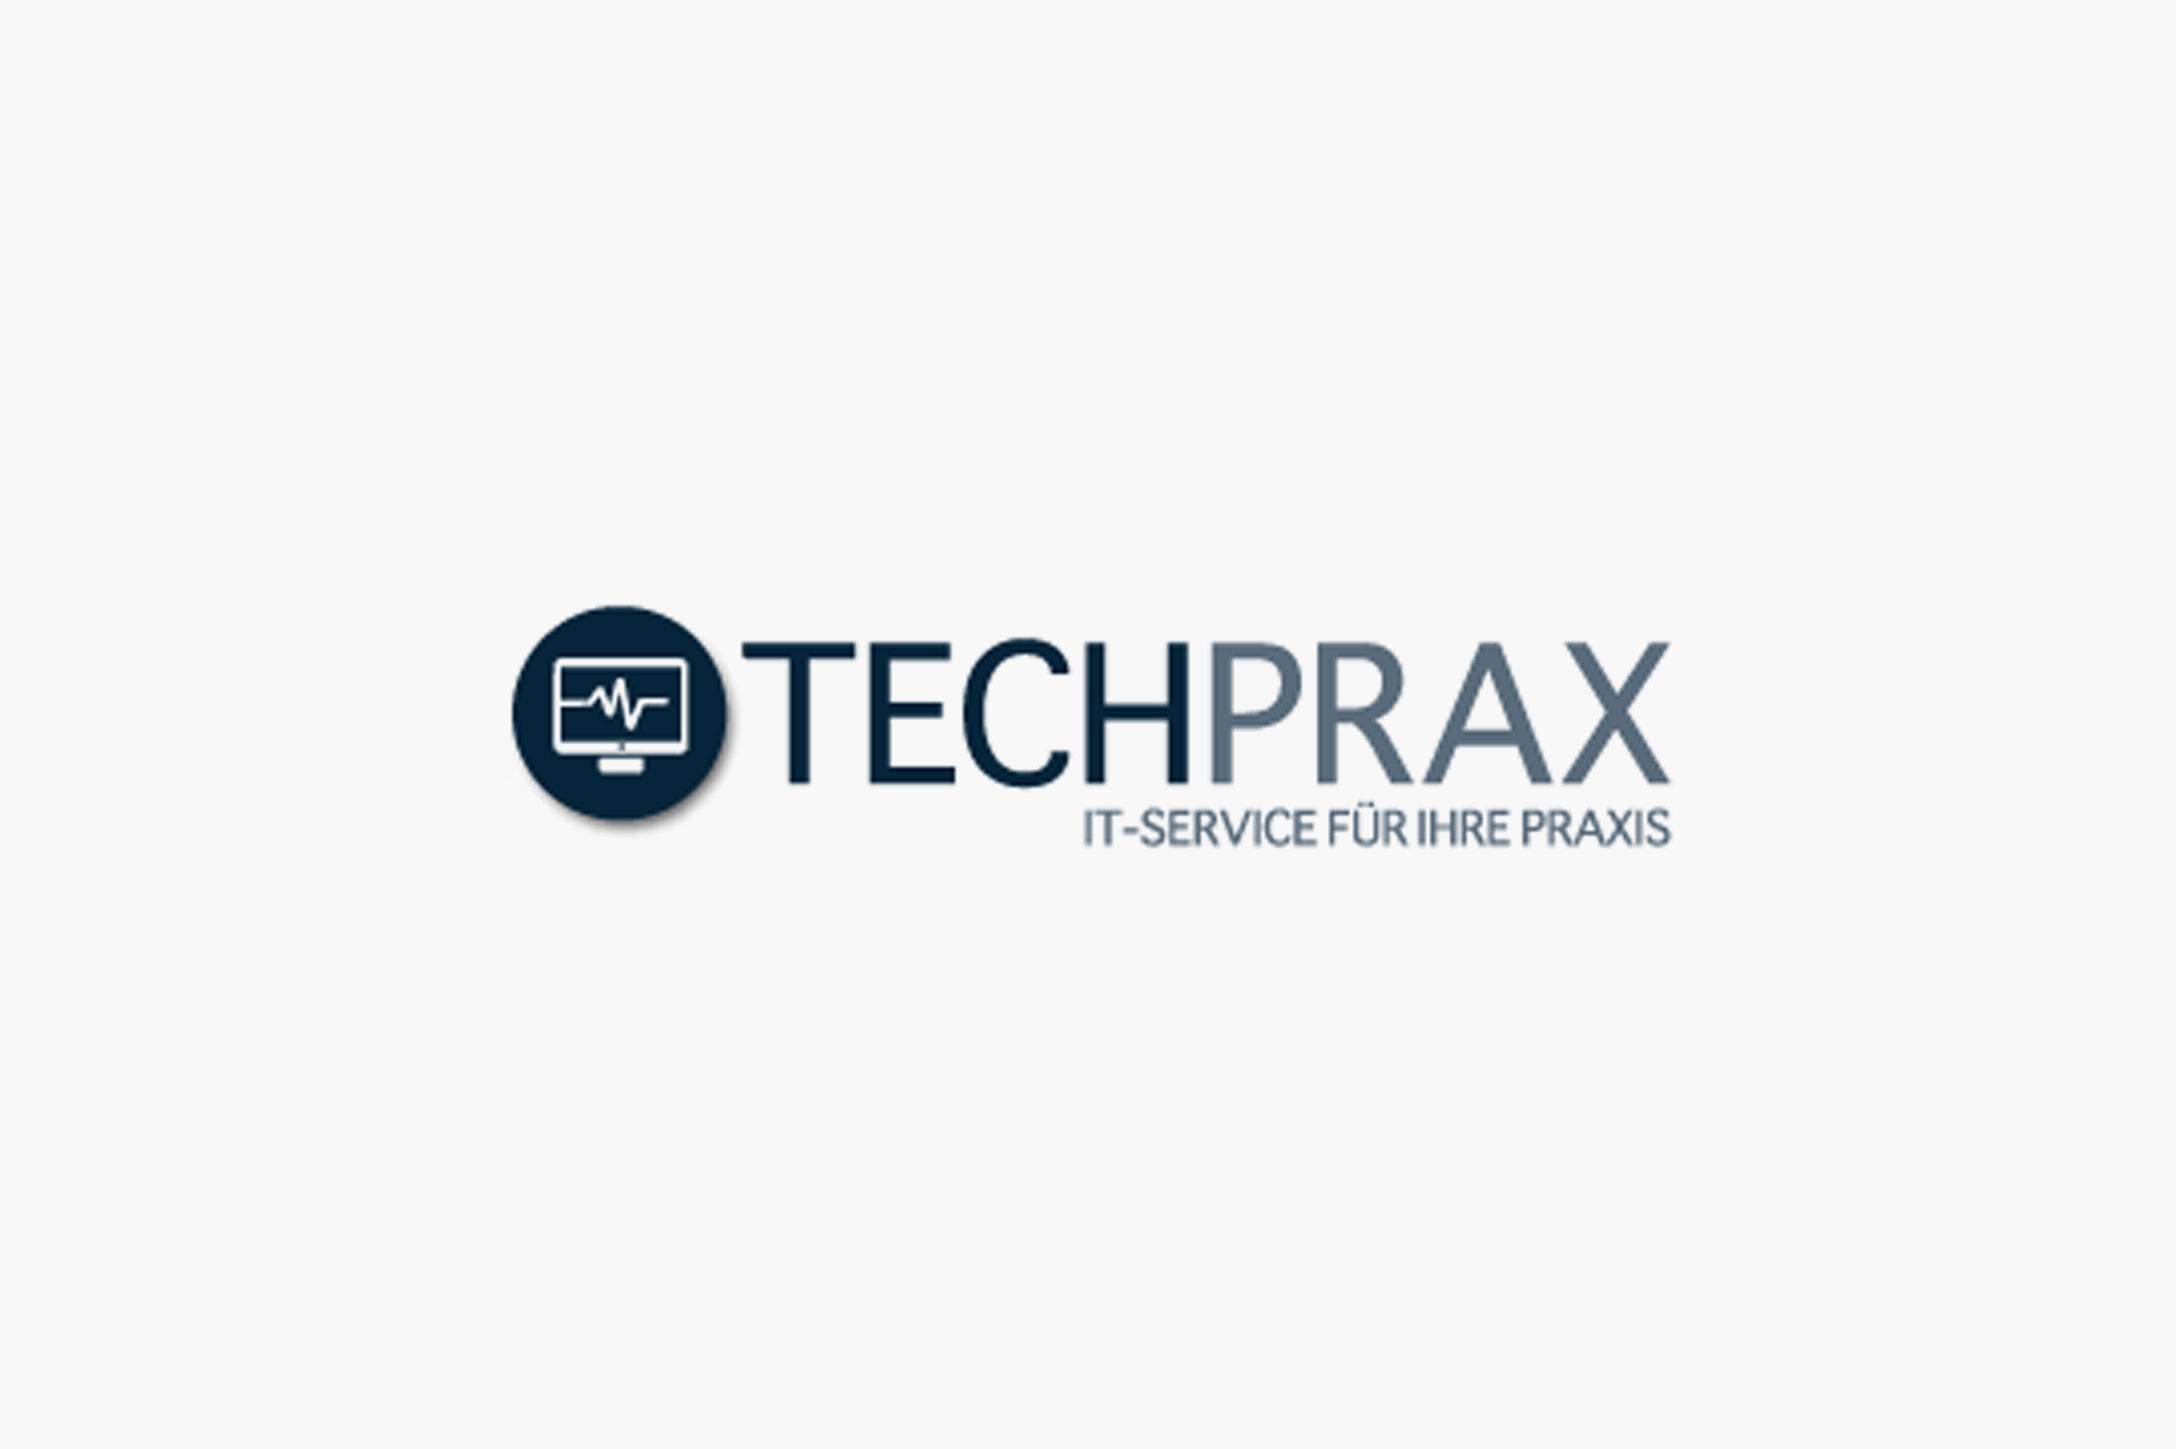 Techprax